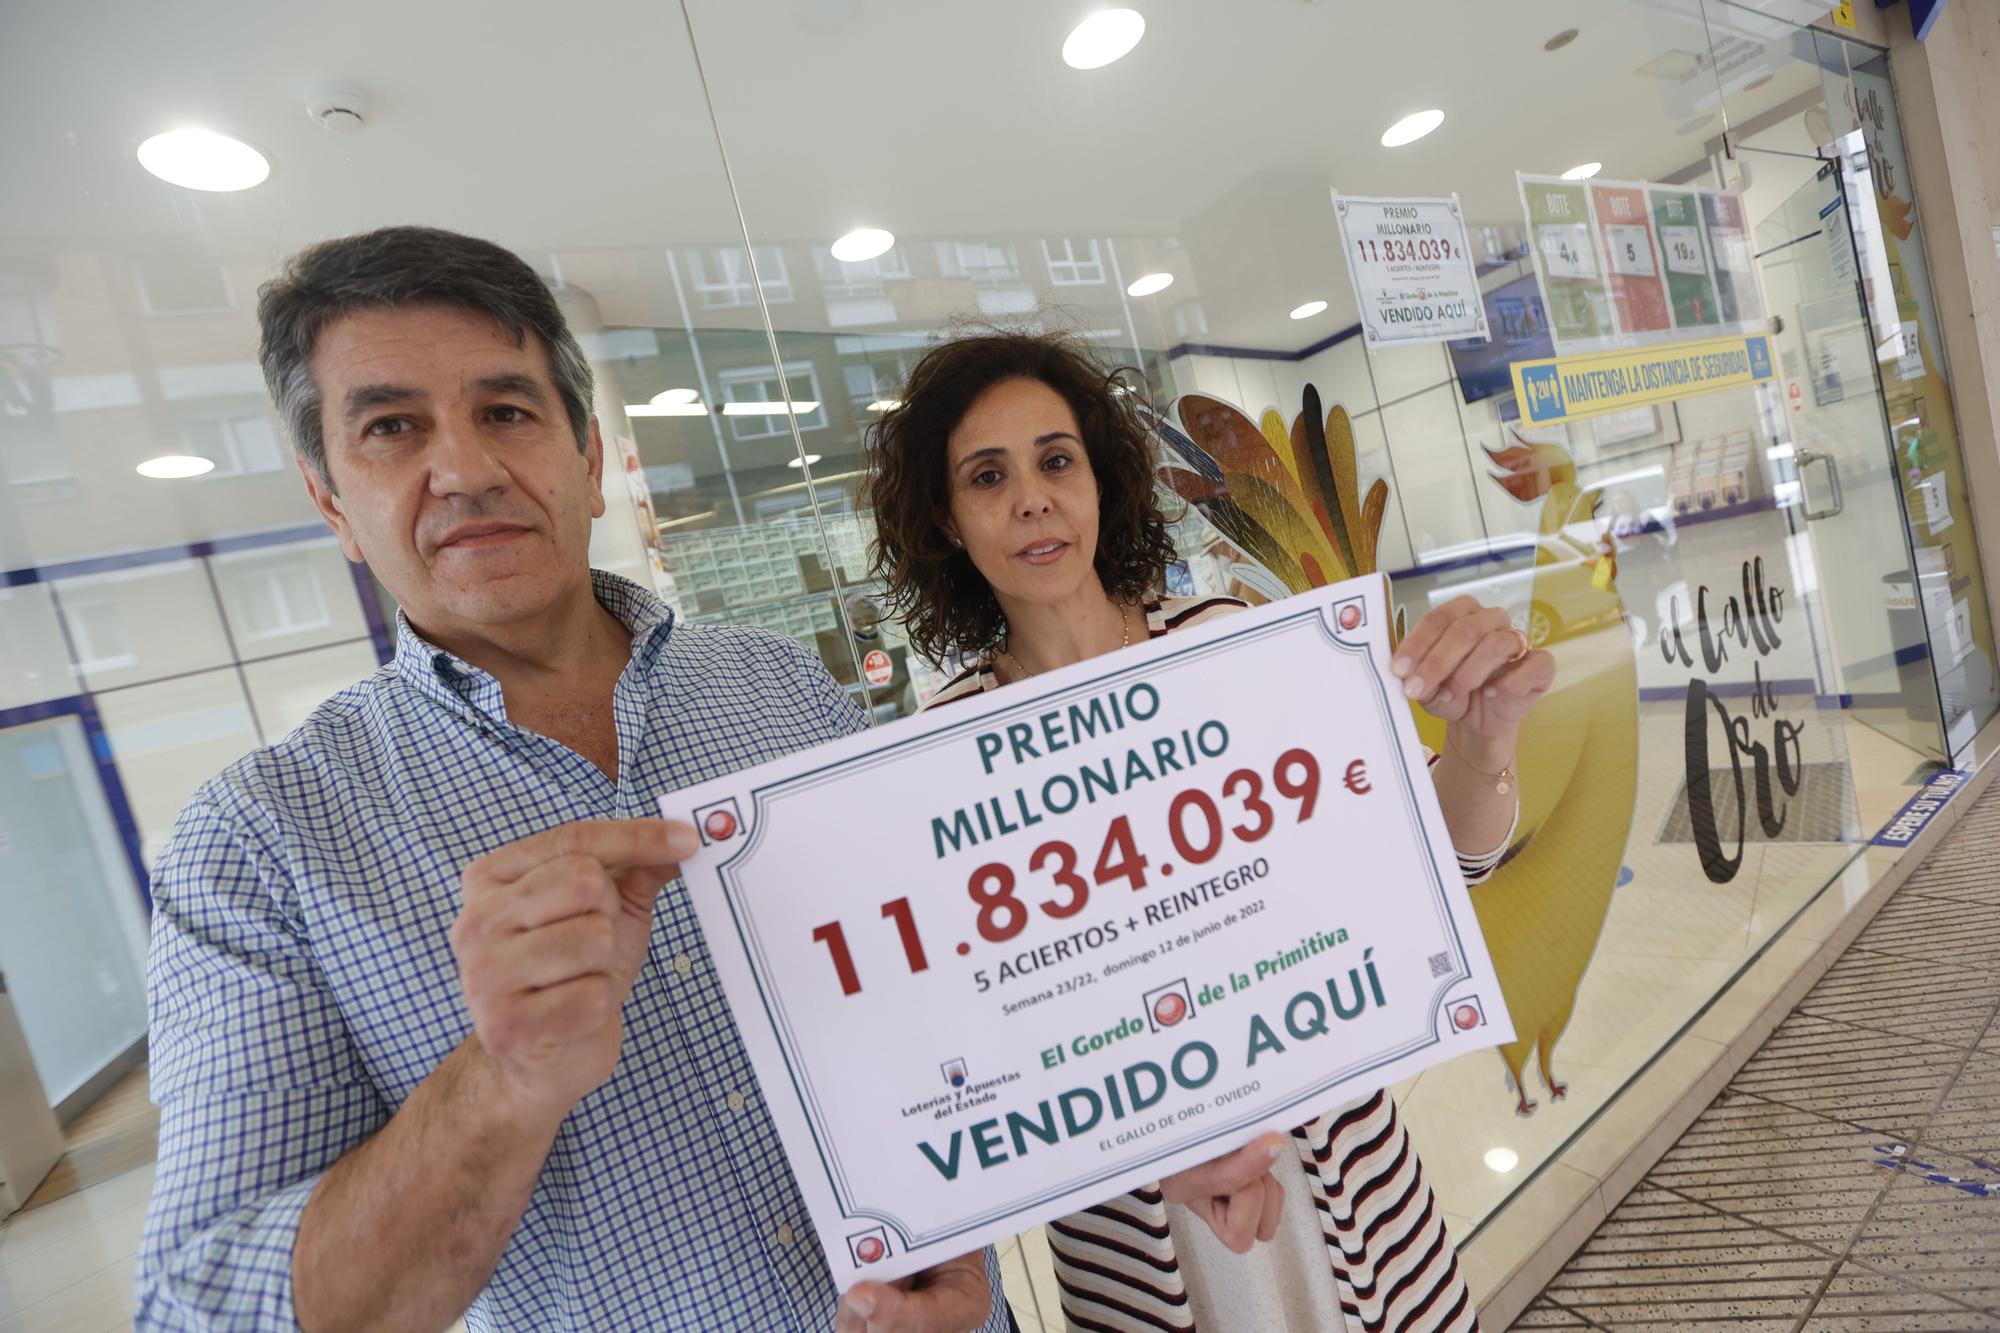 Froilán Blanco y Sandra Rodríguez, con el cartel del premio de 11,8 millones de euros del Gordo de la Primitiva vendido en su administración del Cristo.